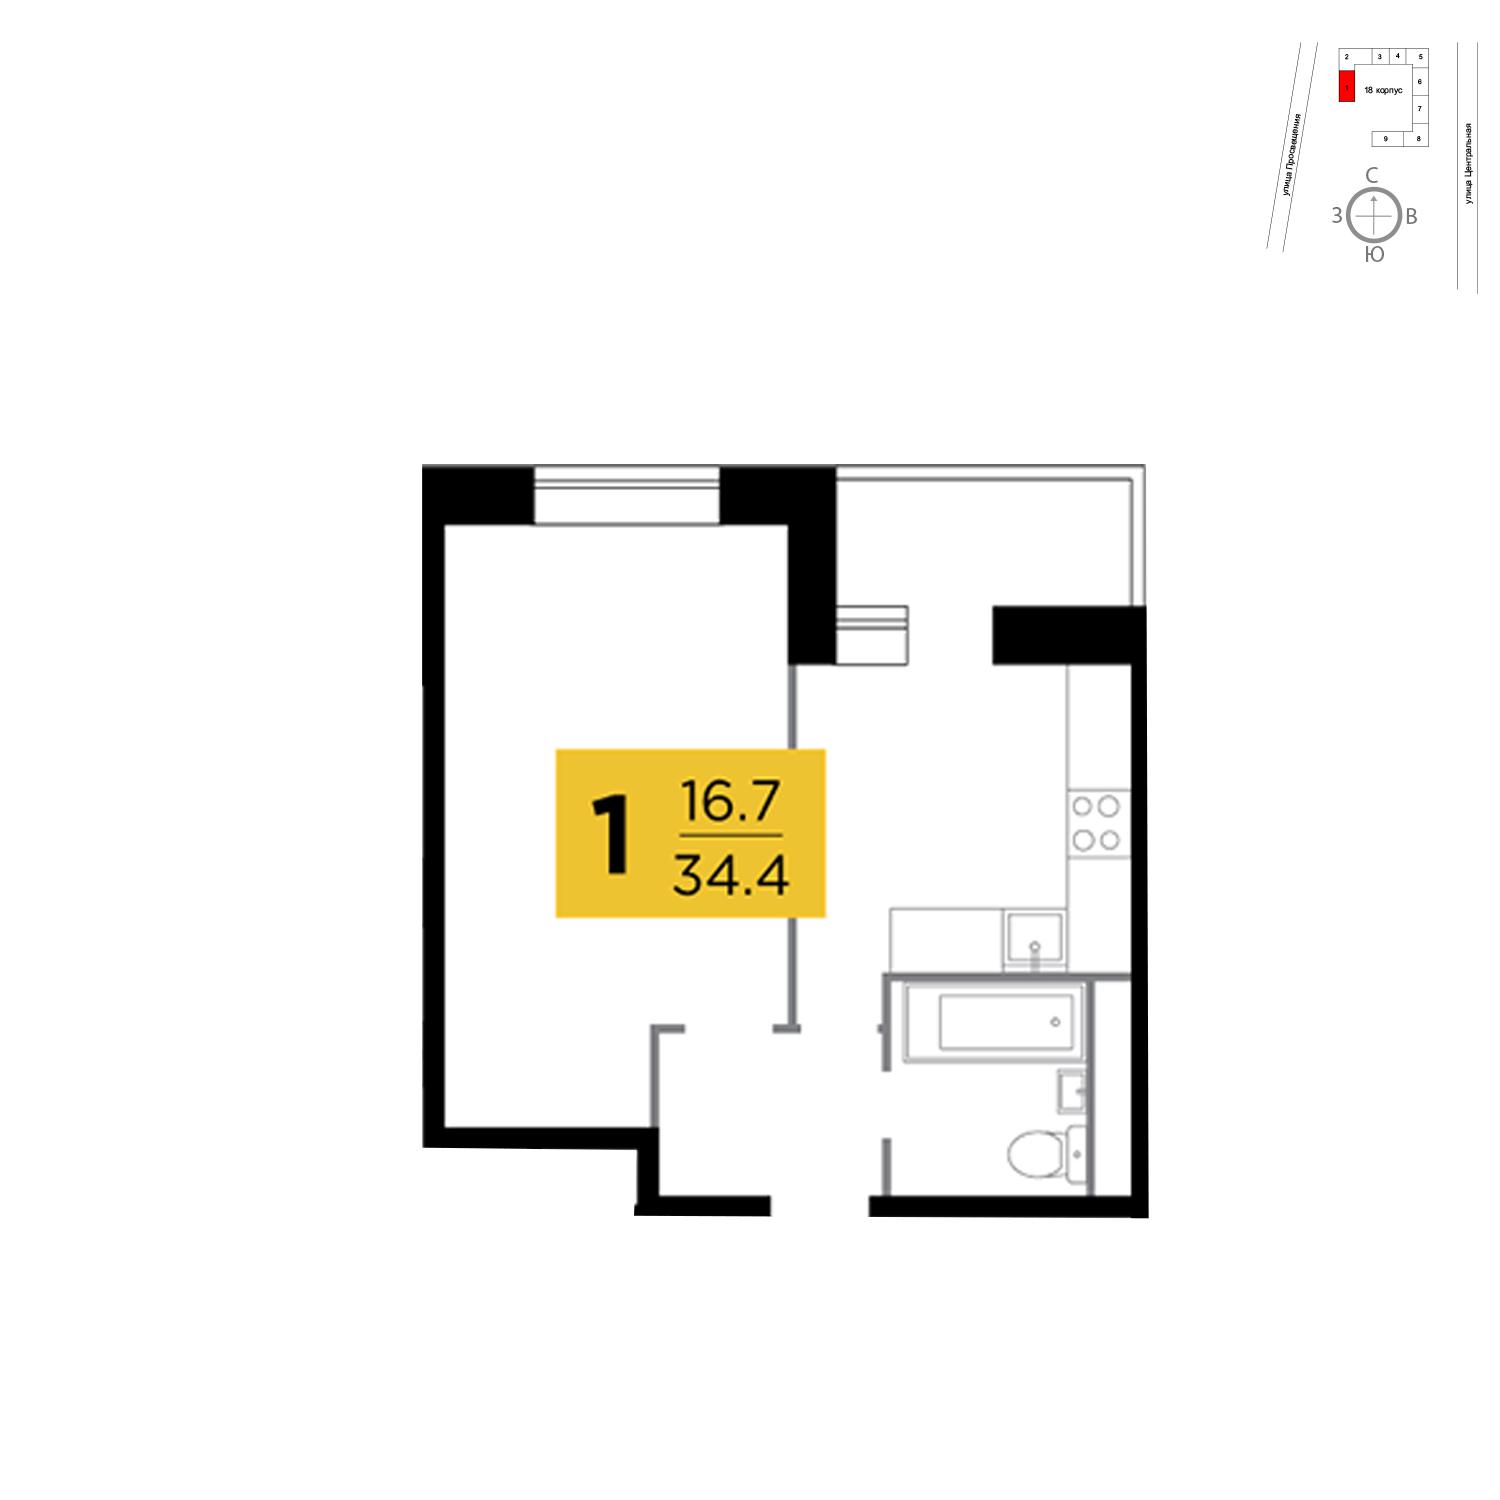 Продаётся 1-комнатная квартира в новостройке 34.4 кв.м. этаж 12/16 за 2 658 604 руб 